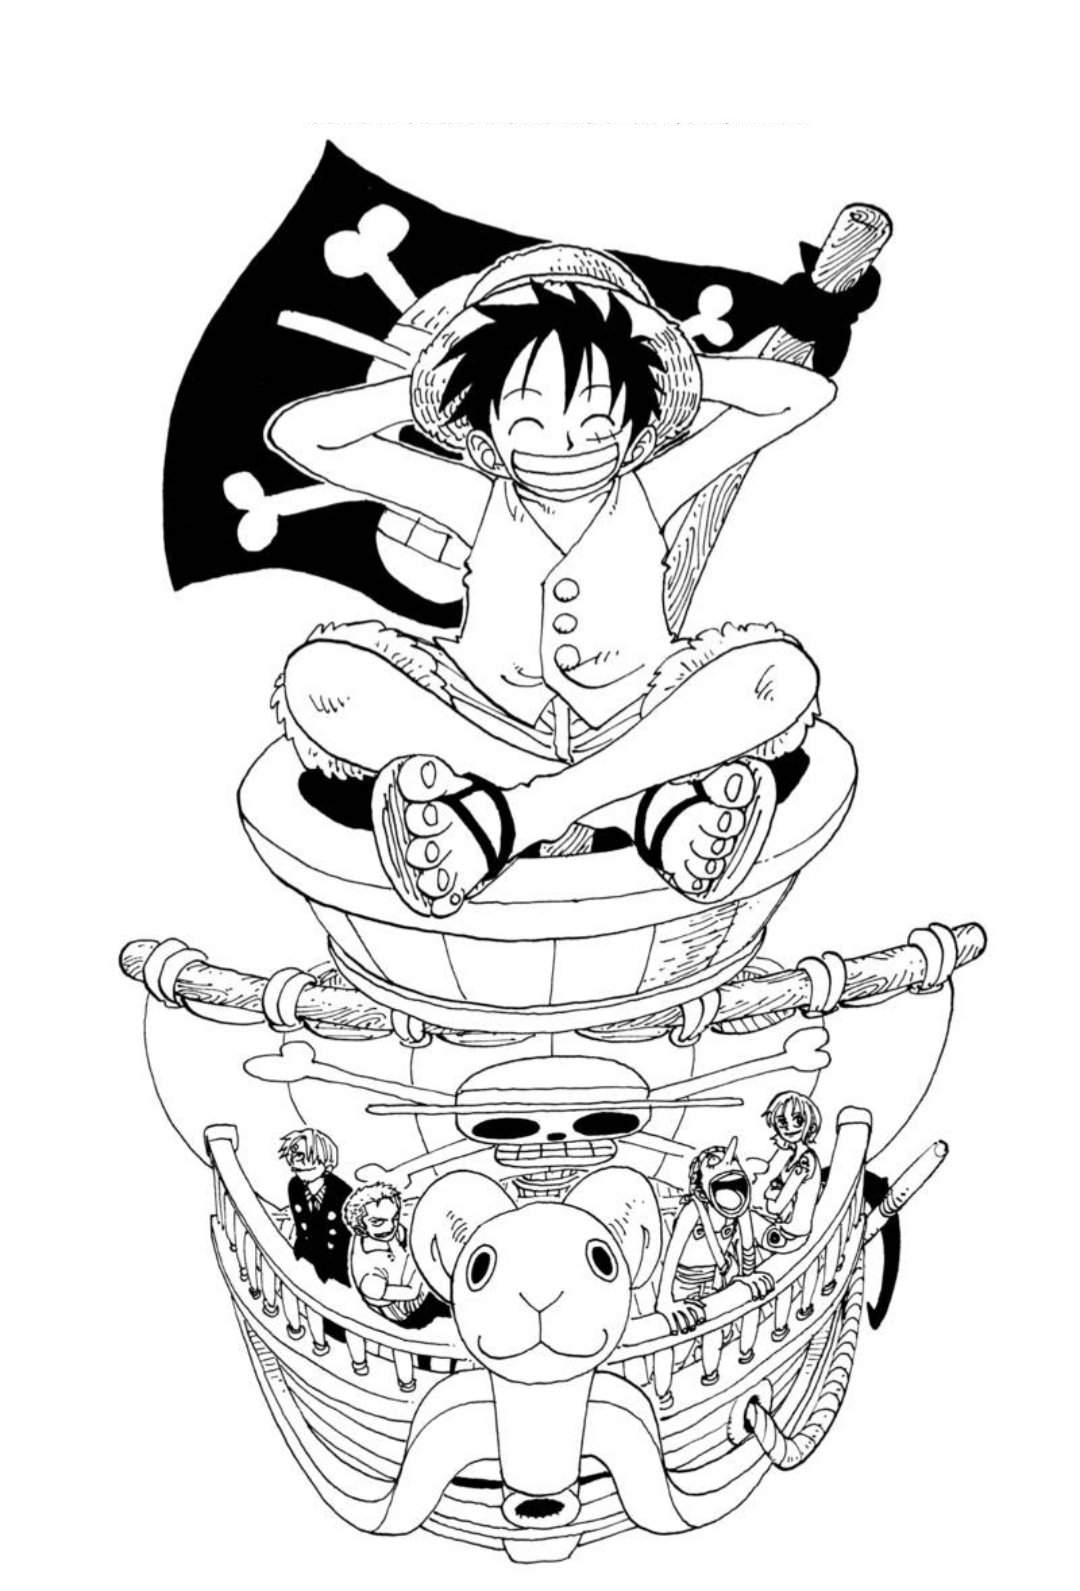 Xem Hơn 100 Ảnh Về Hình Vẽ One Piece Đẹp - Daotaonec